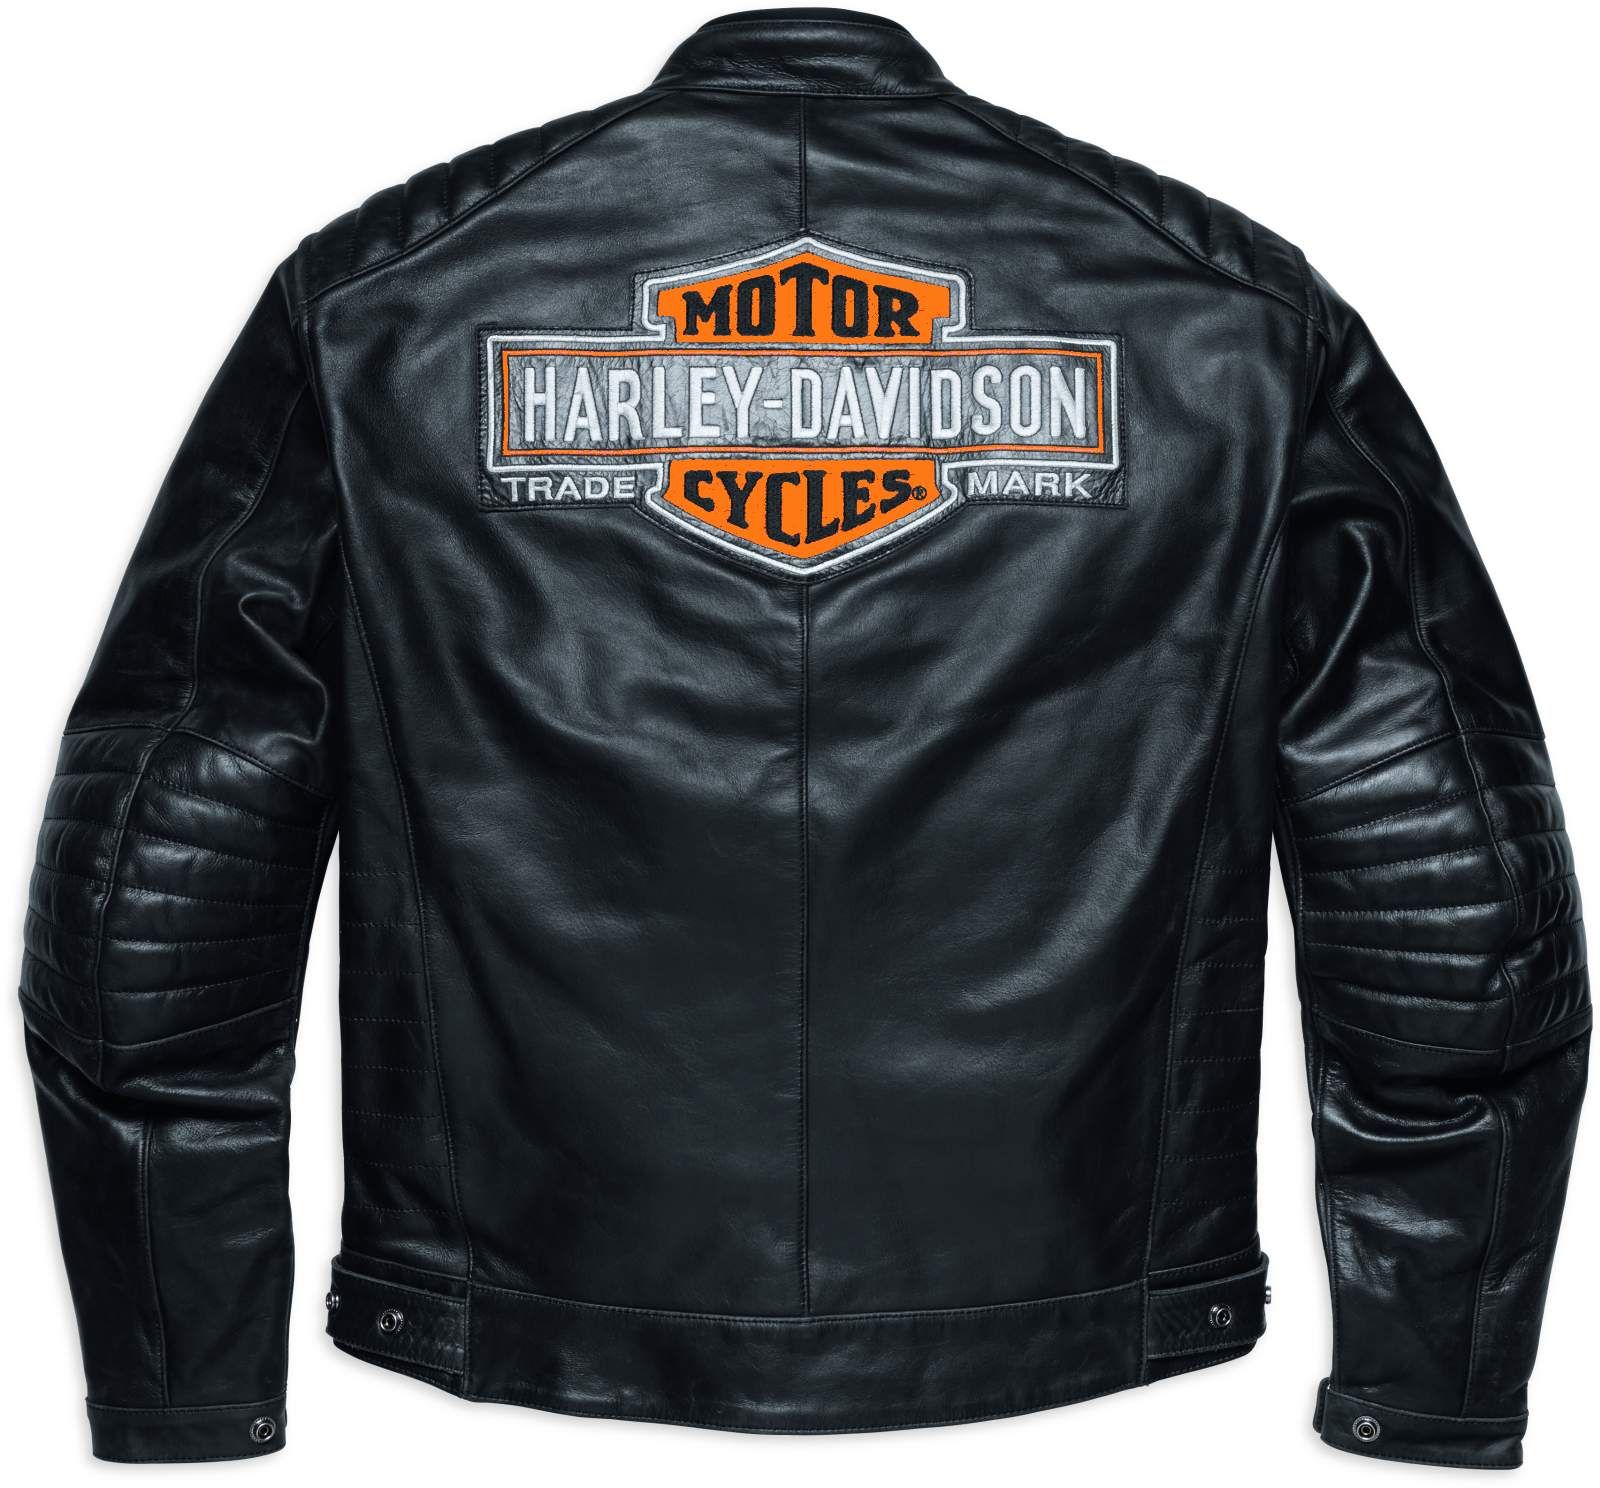 Ide Penting Harley Davidson Leather Jackets